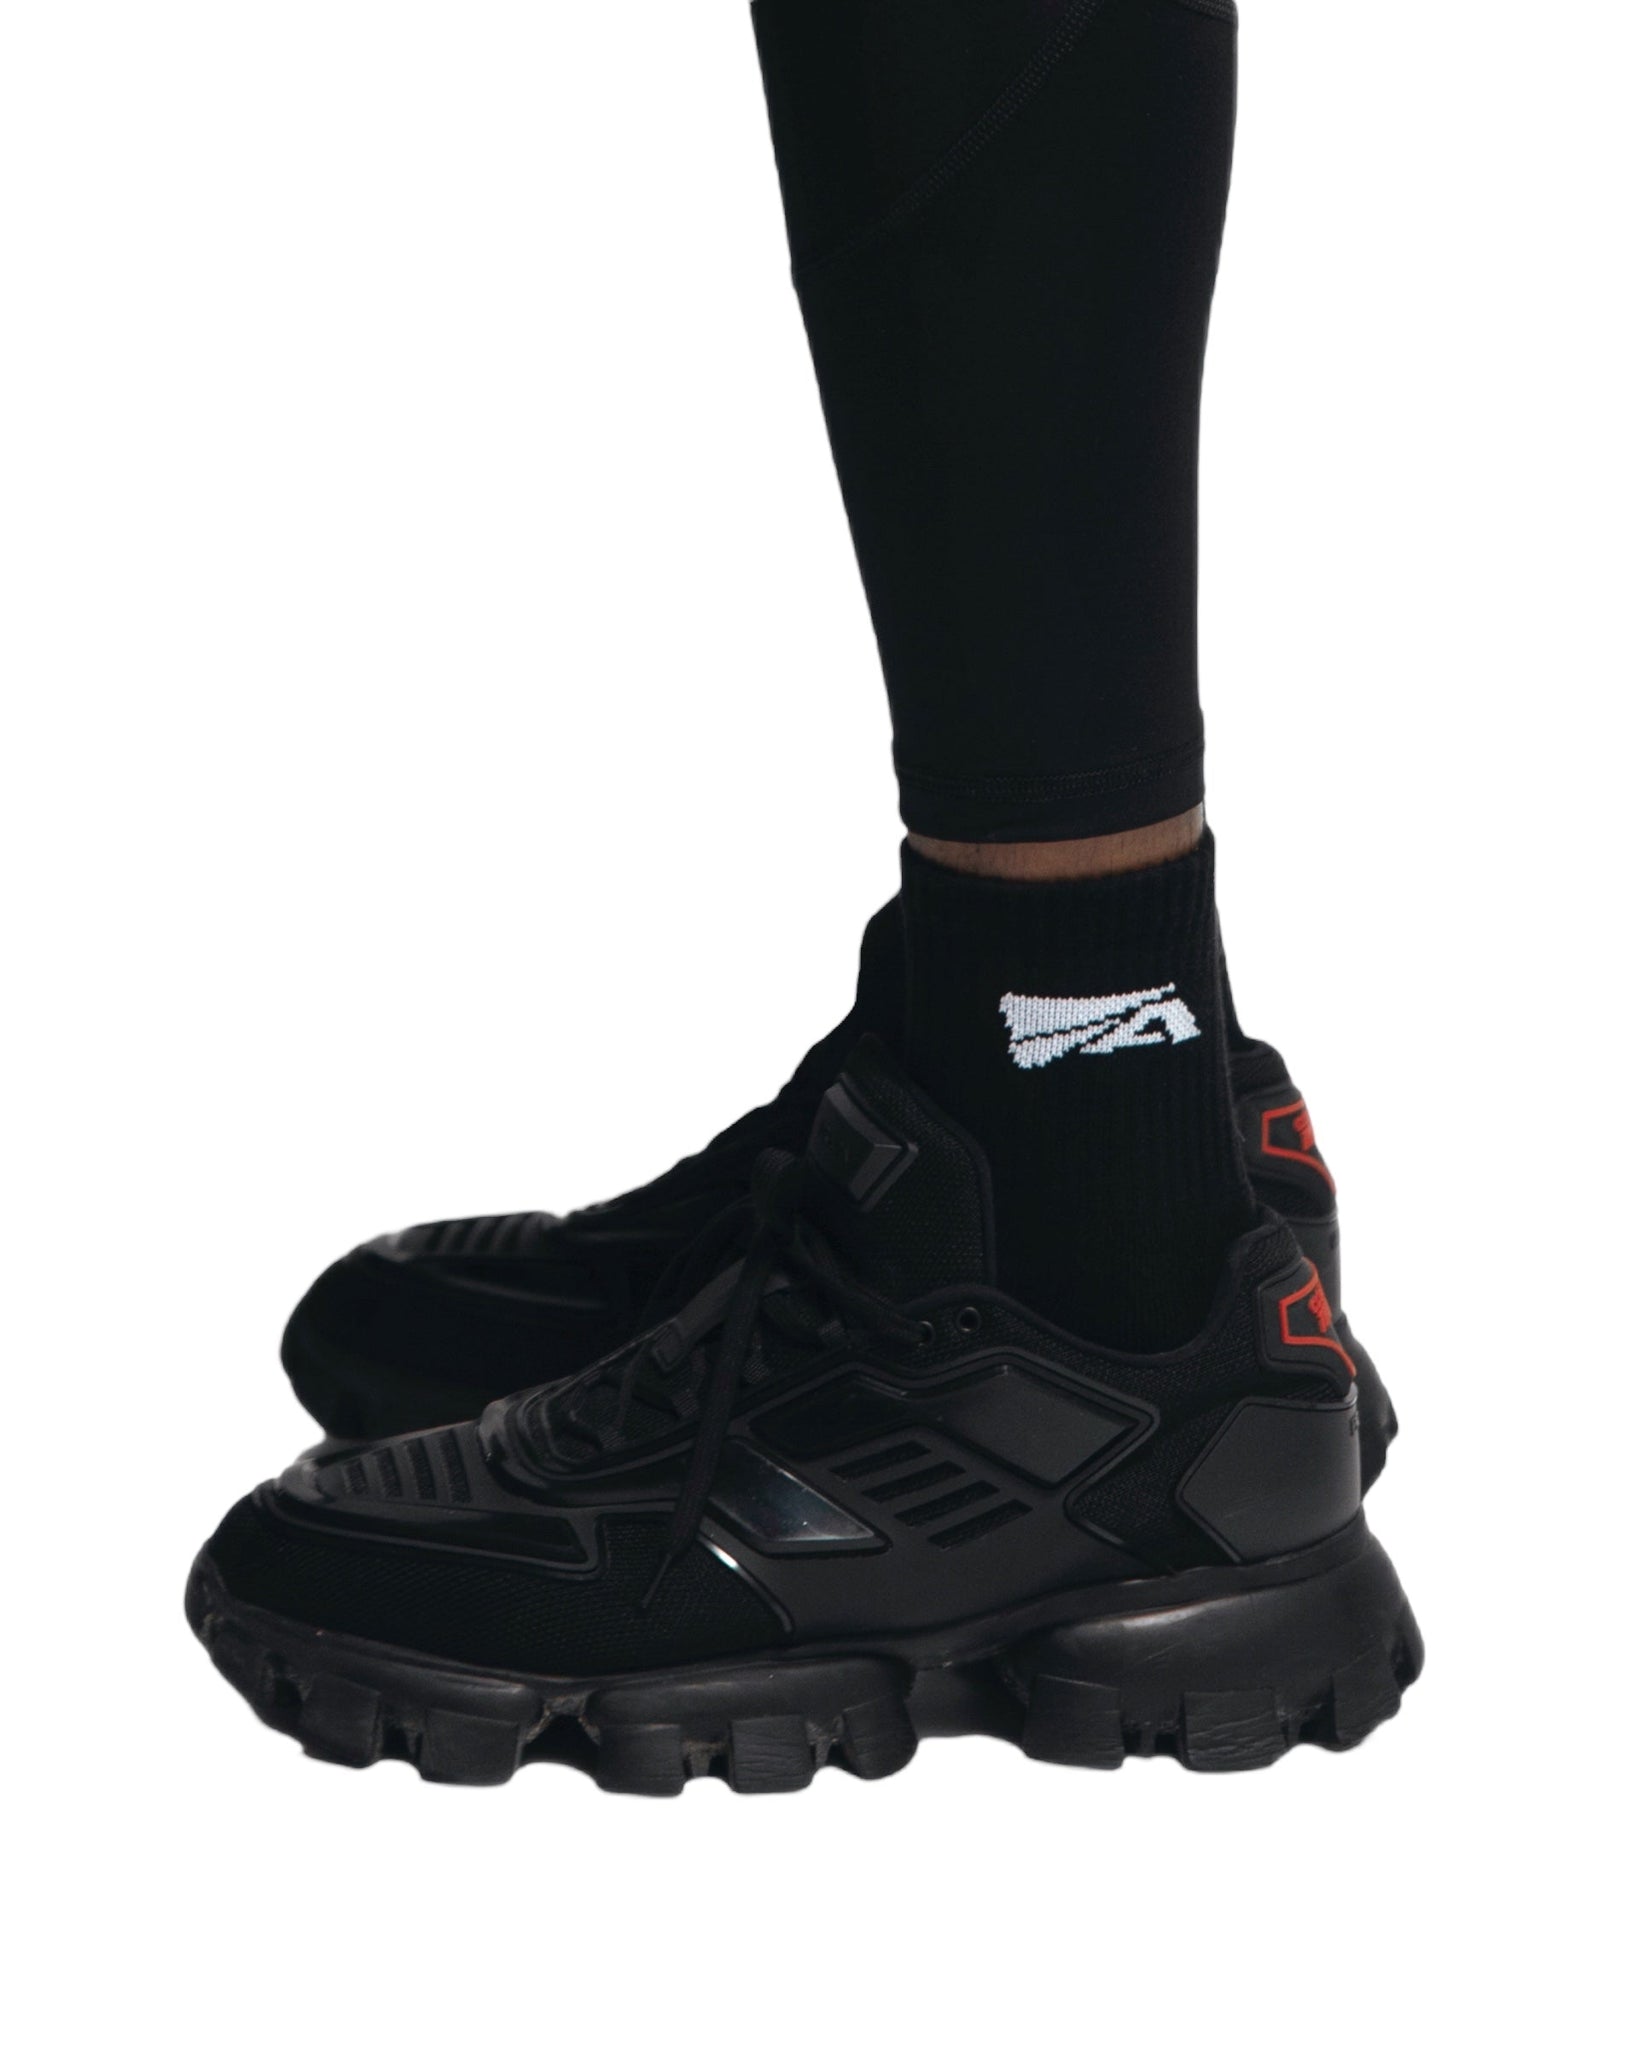 Quarter Socks (Black)